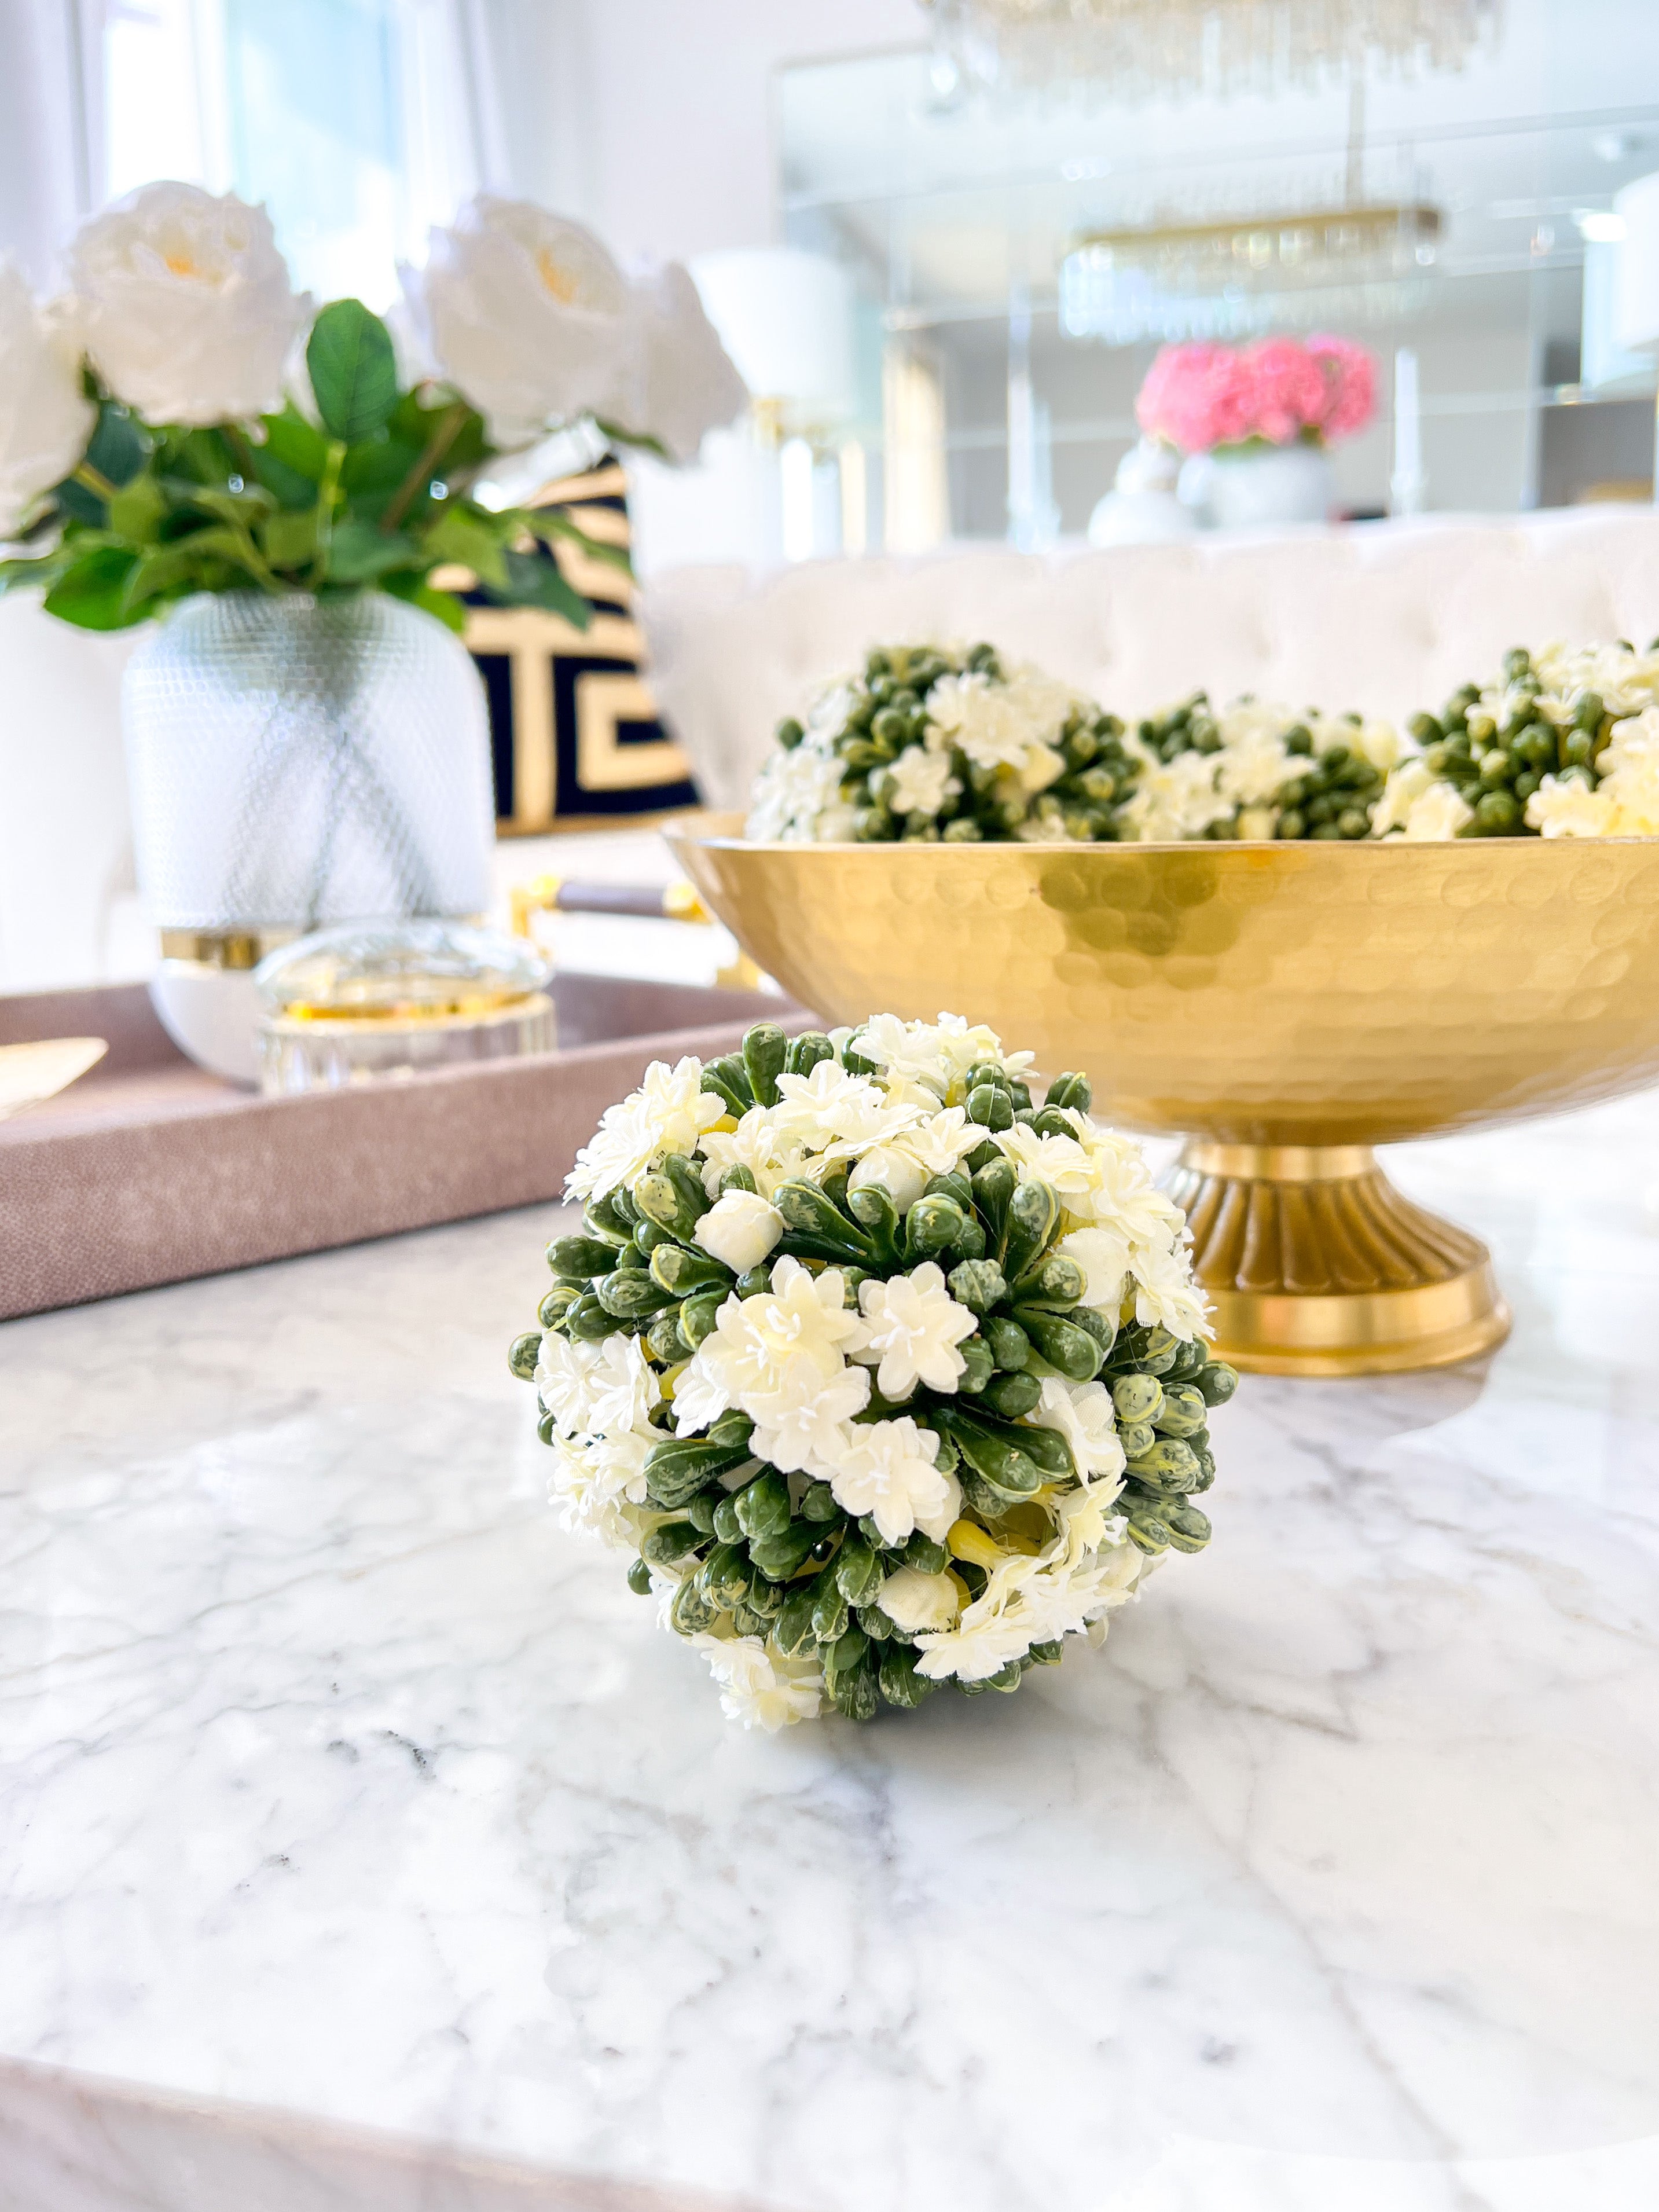 Faux Floral Vase Filler/ Flower Orb - HTS HOME DECOR